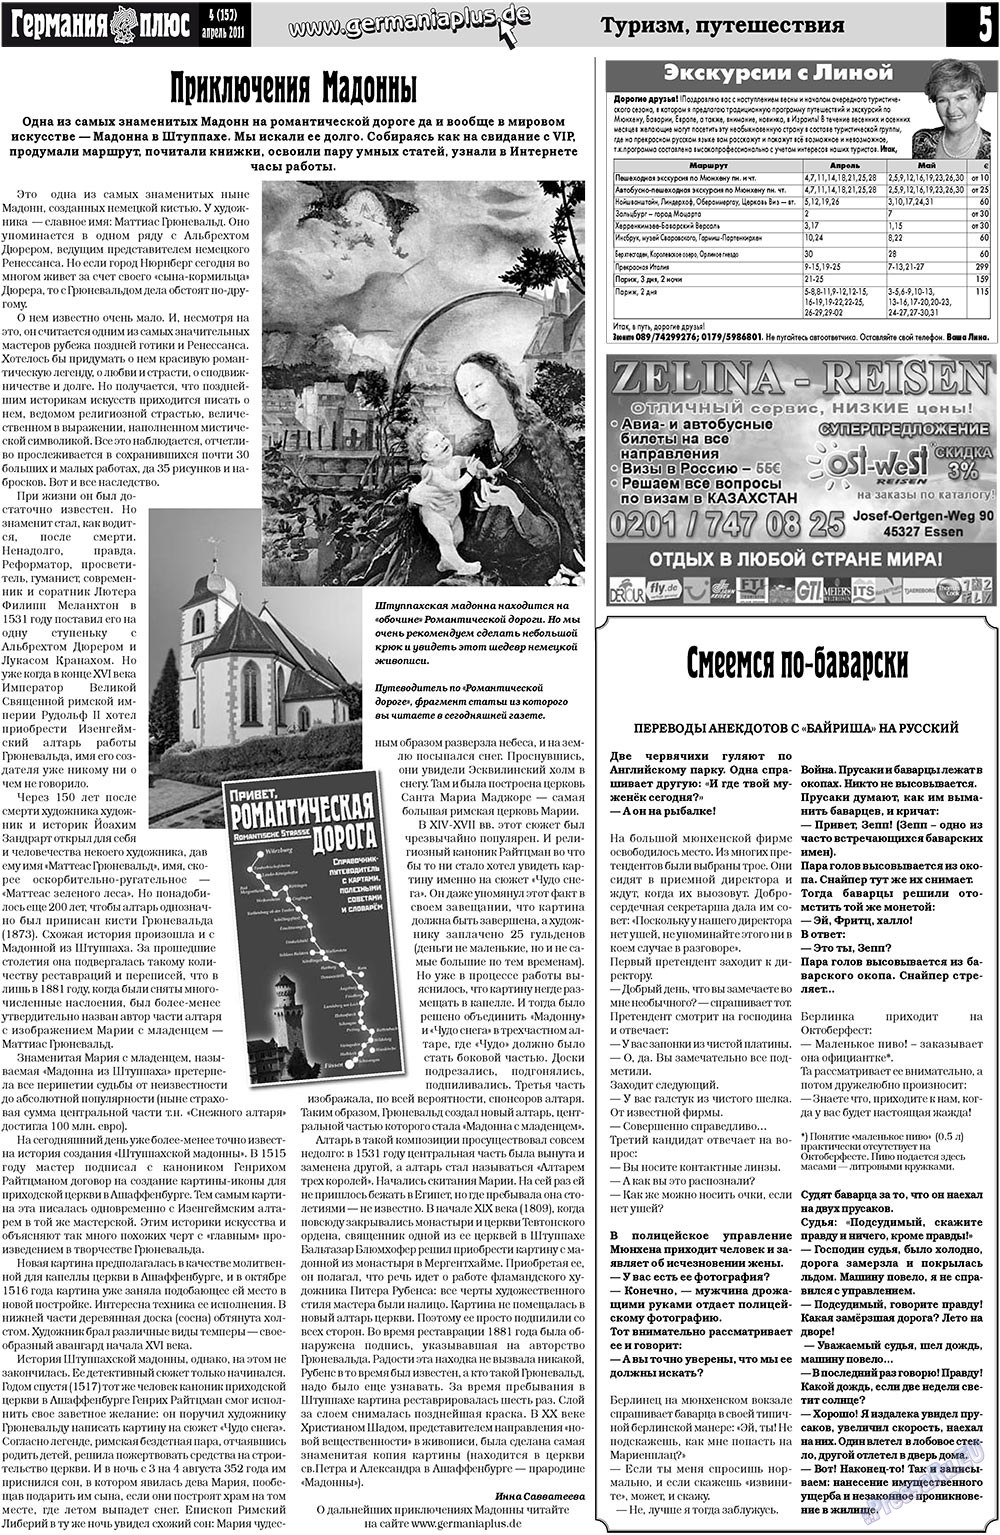 Германия плюс (газета). 2011 год, номер 4, стр. 5